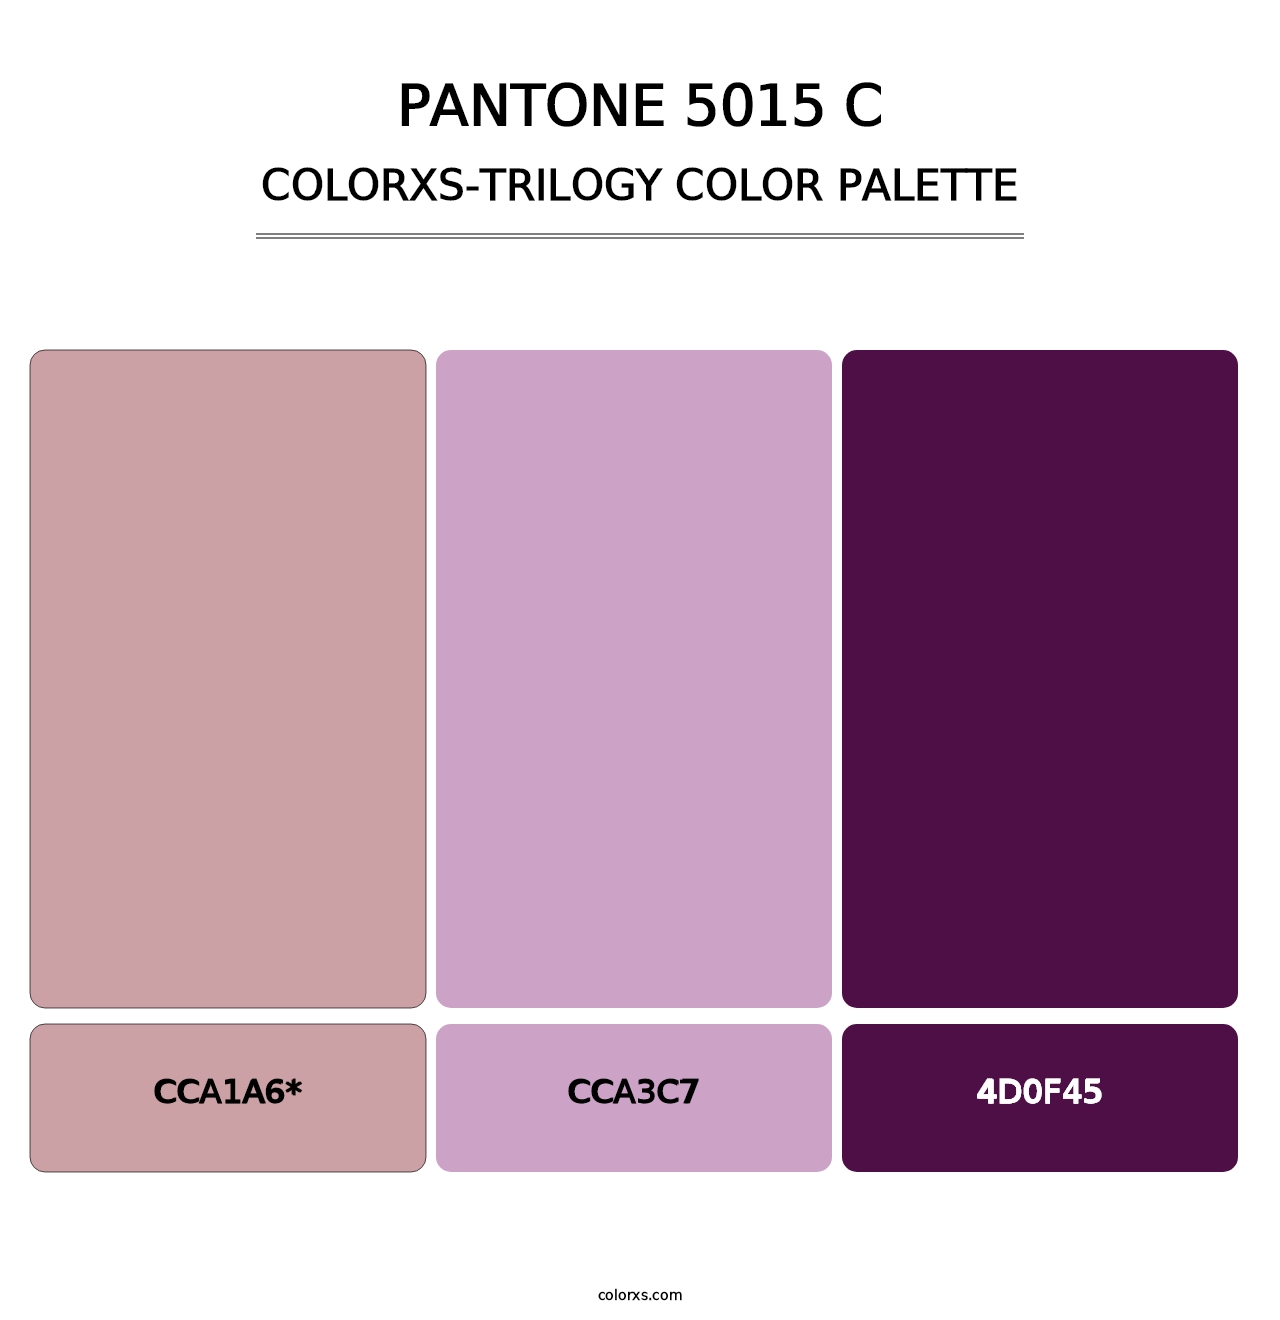 PANTONE 5015 C - Colorxs Trilogy Palette